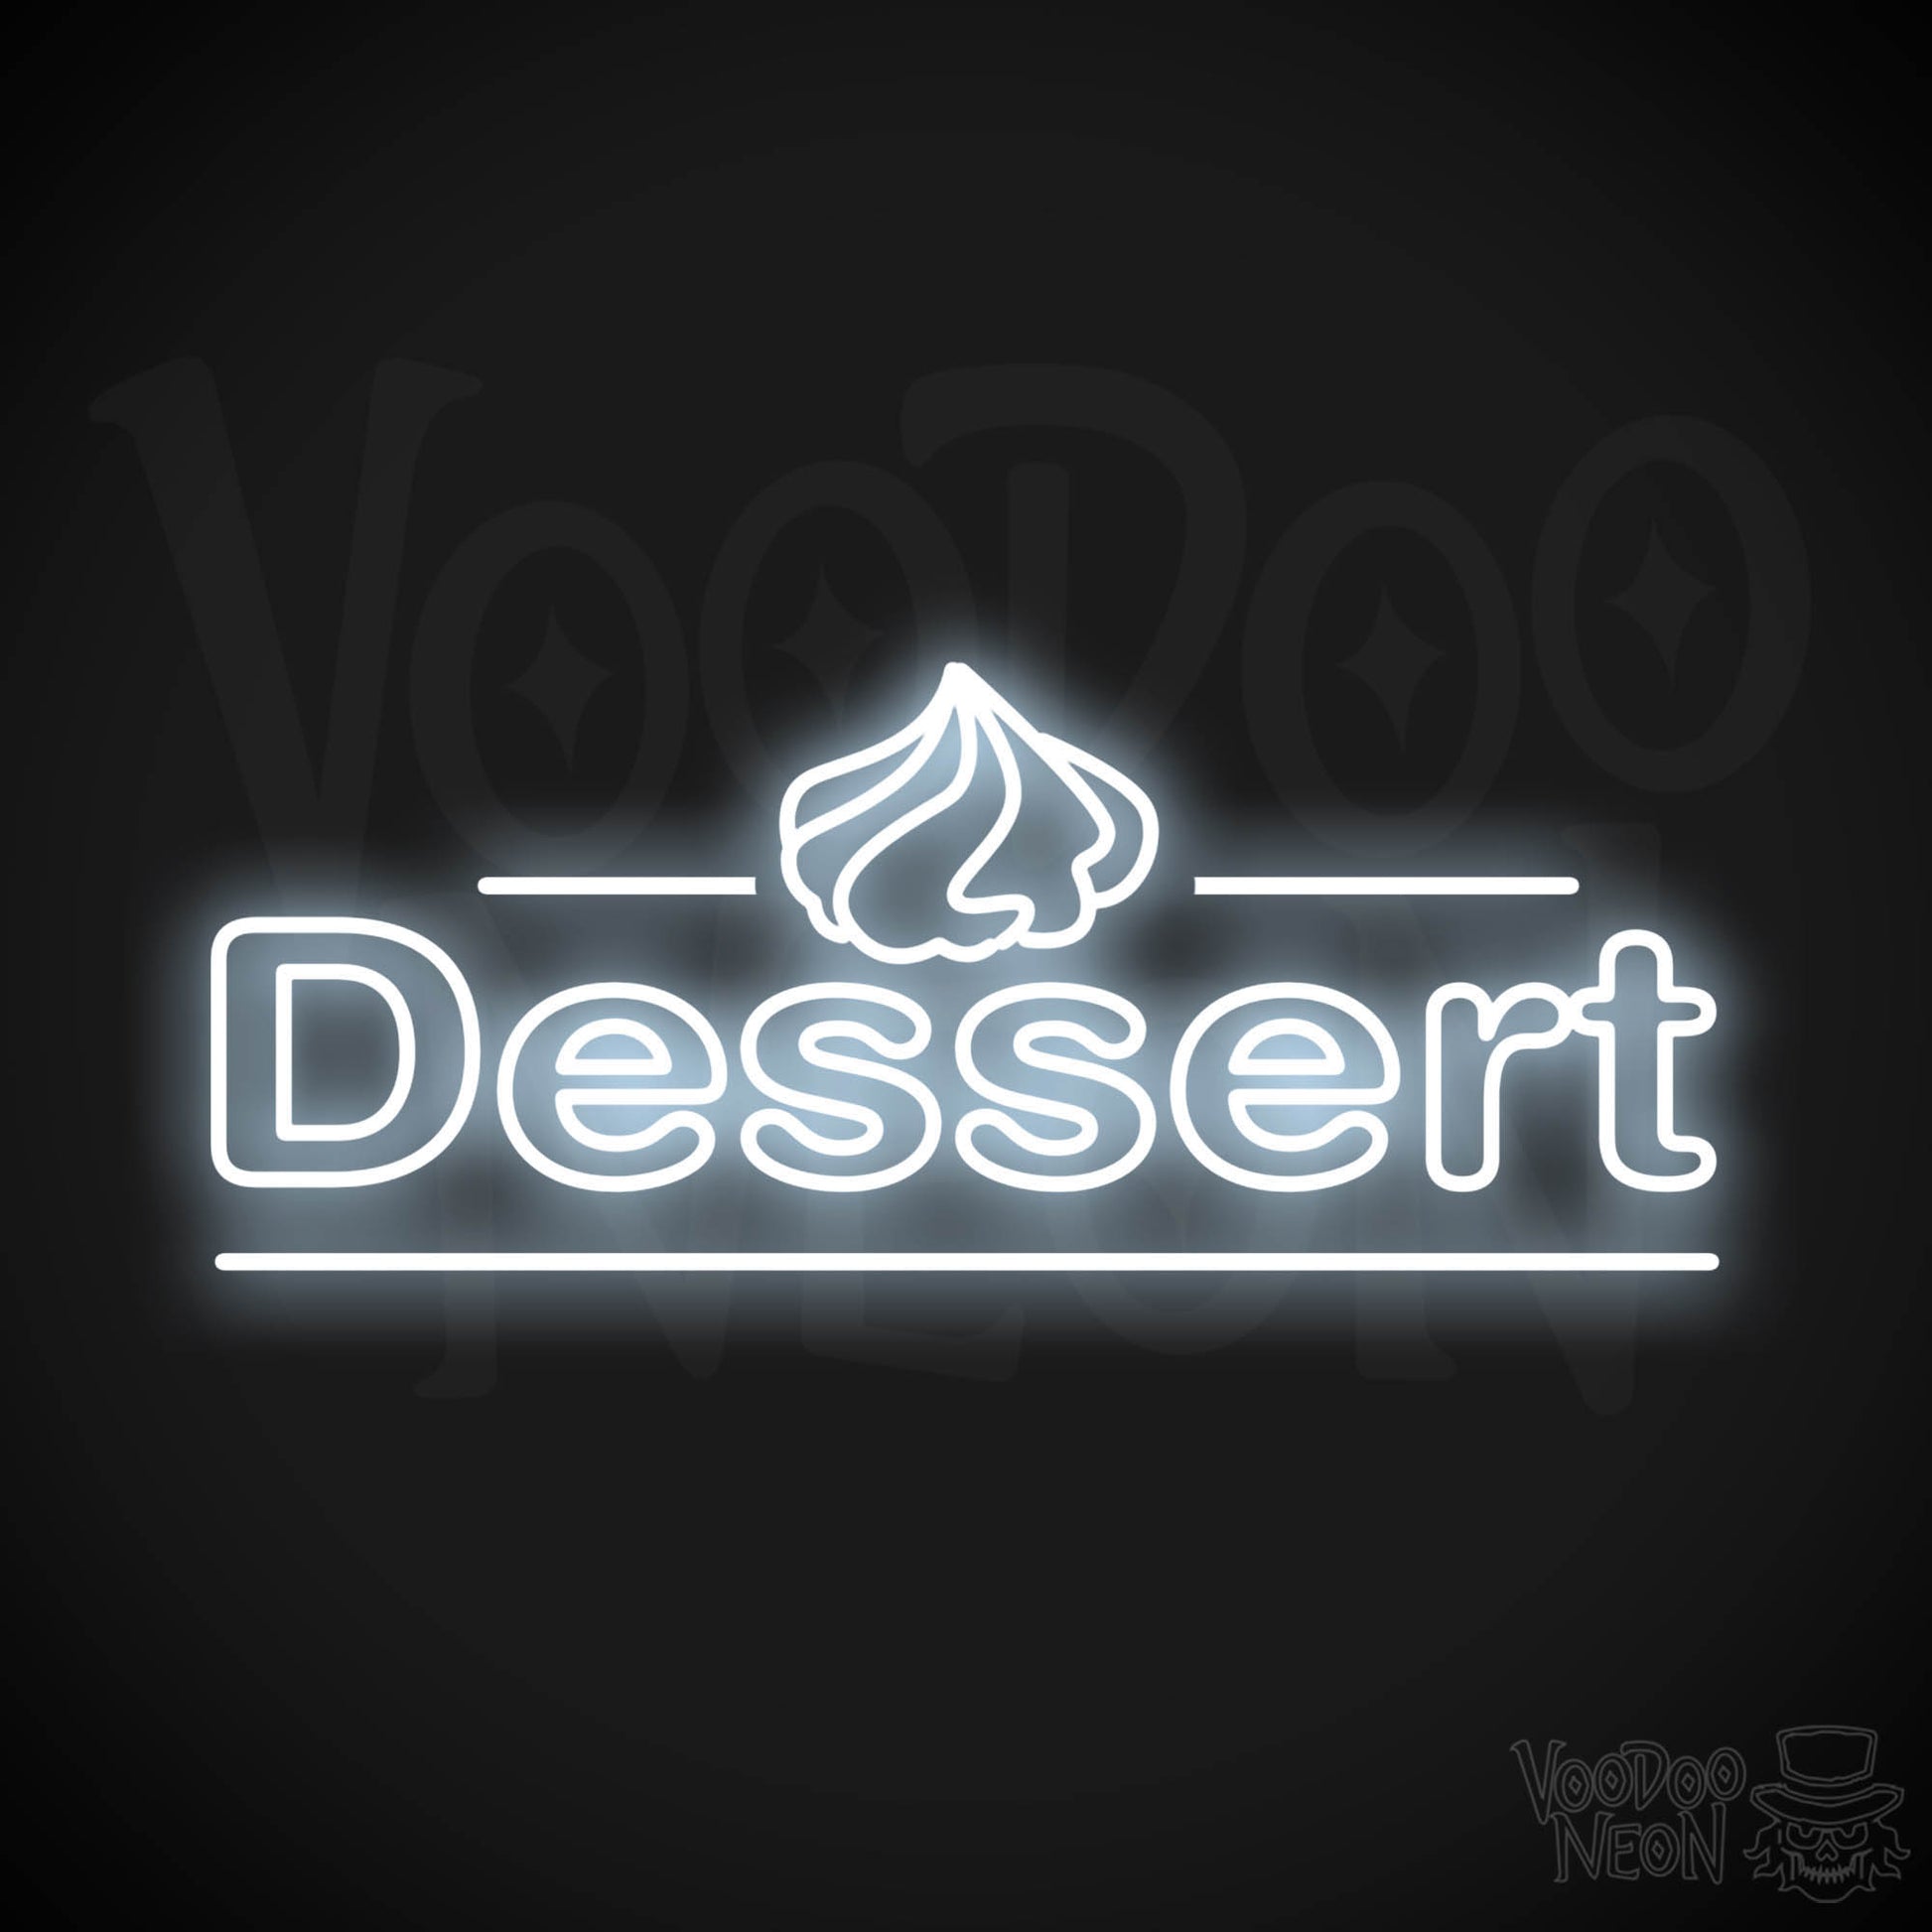 Dessert LED Neon - Cool White